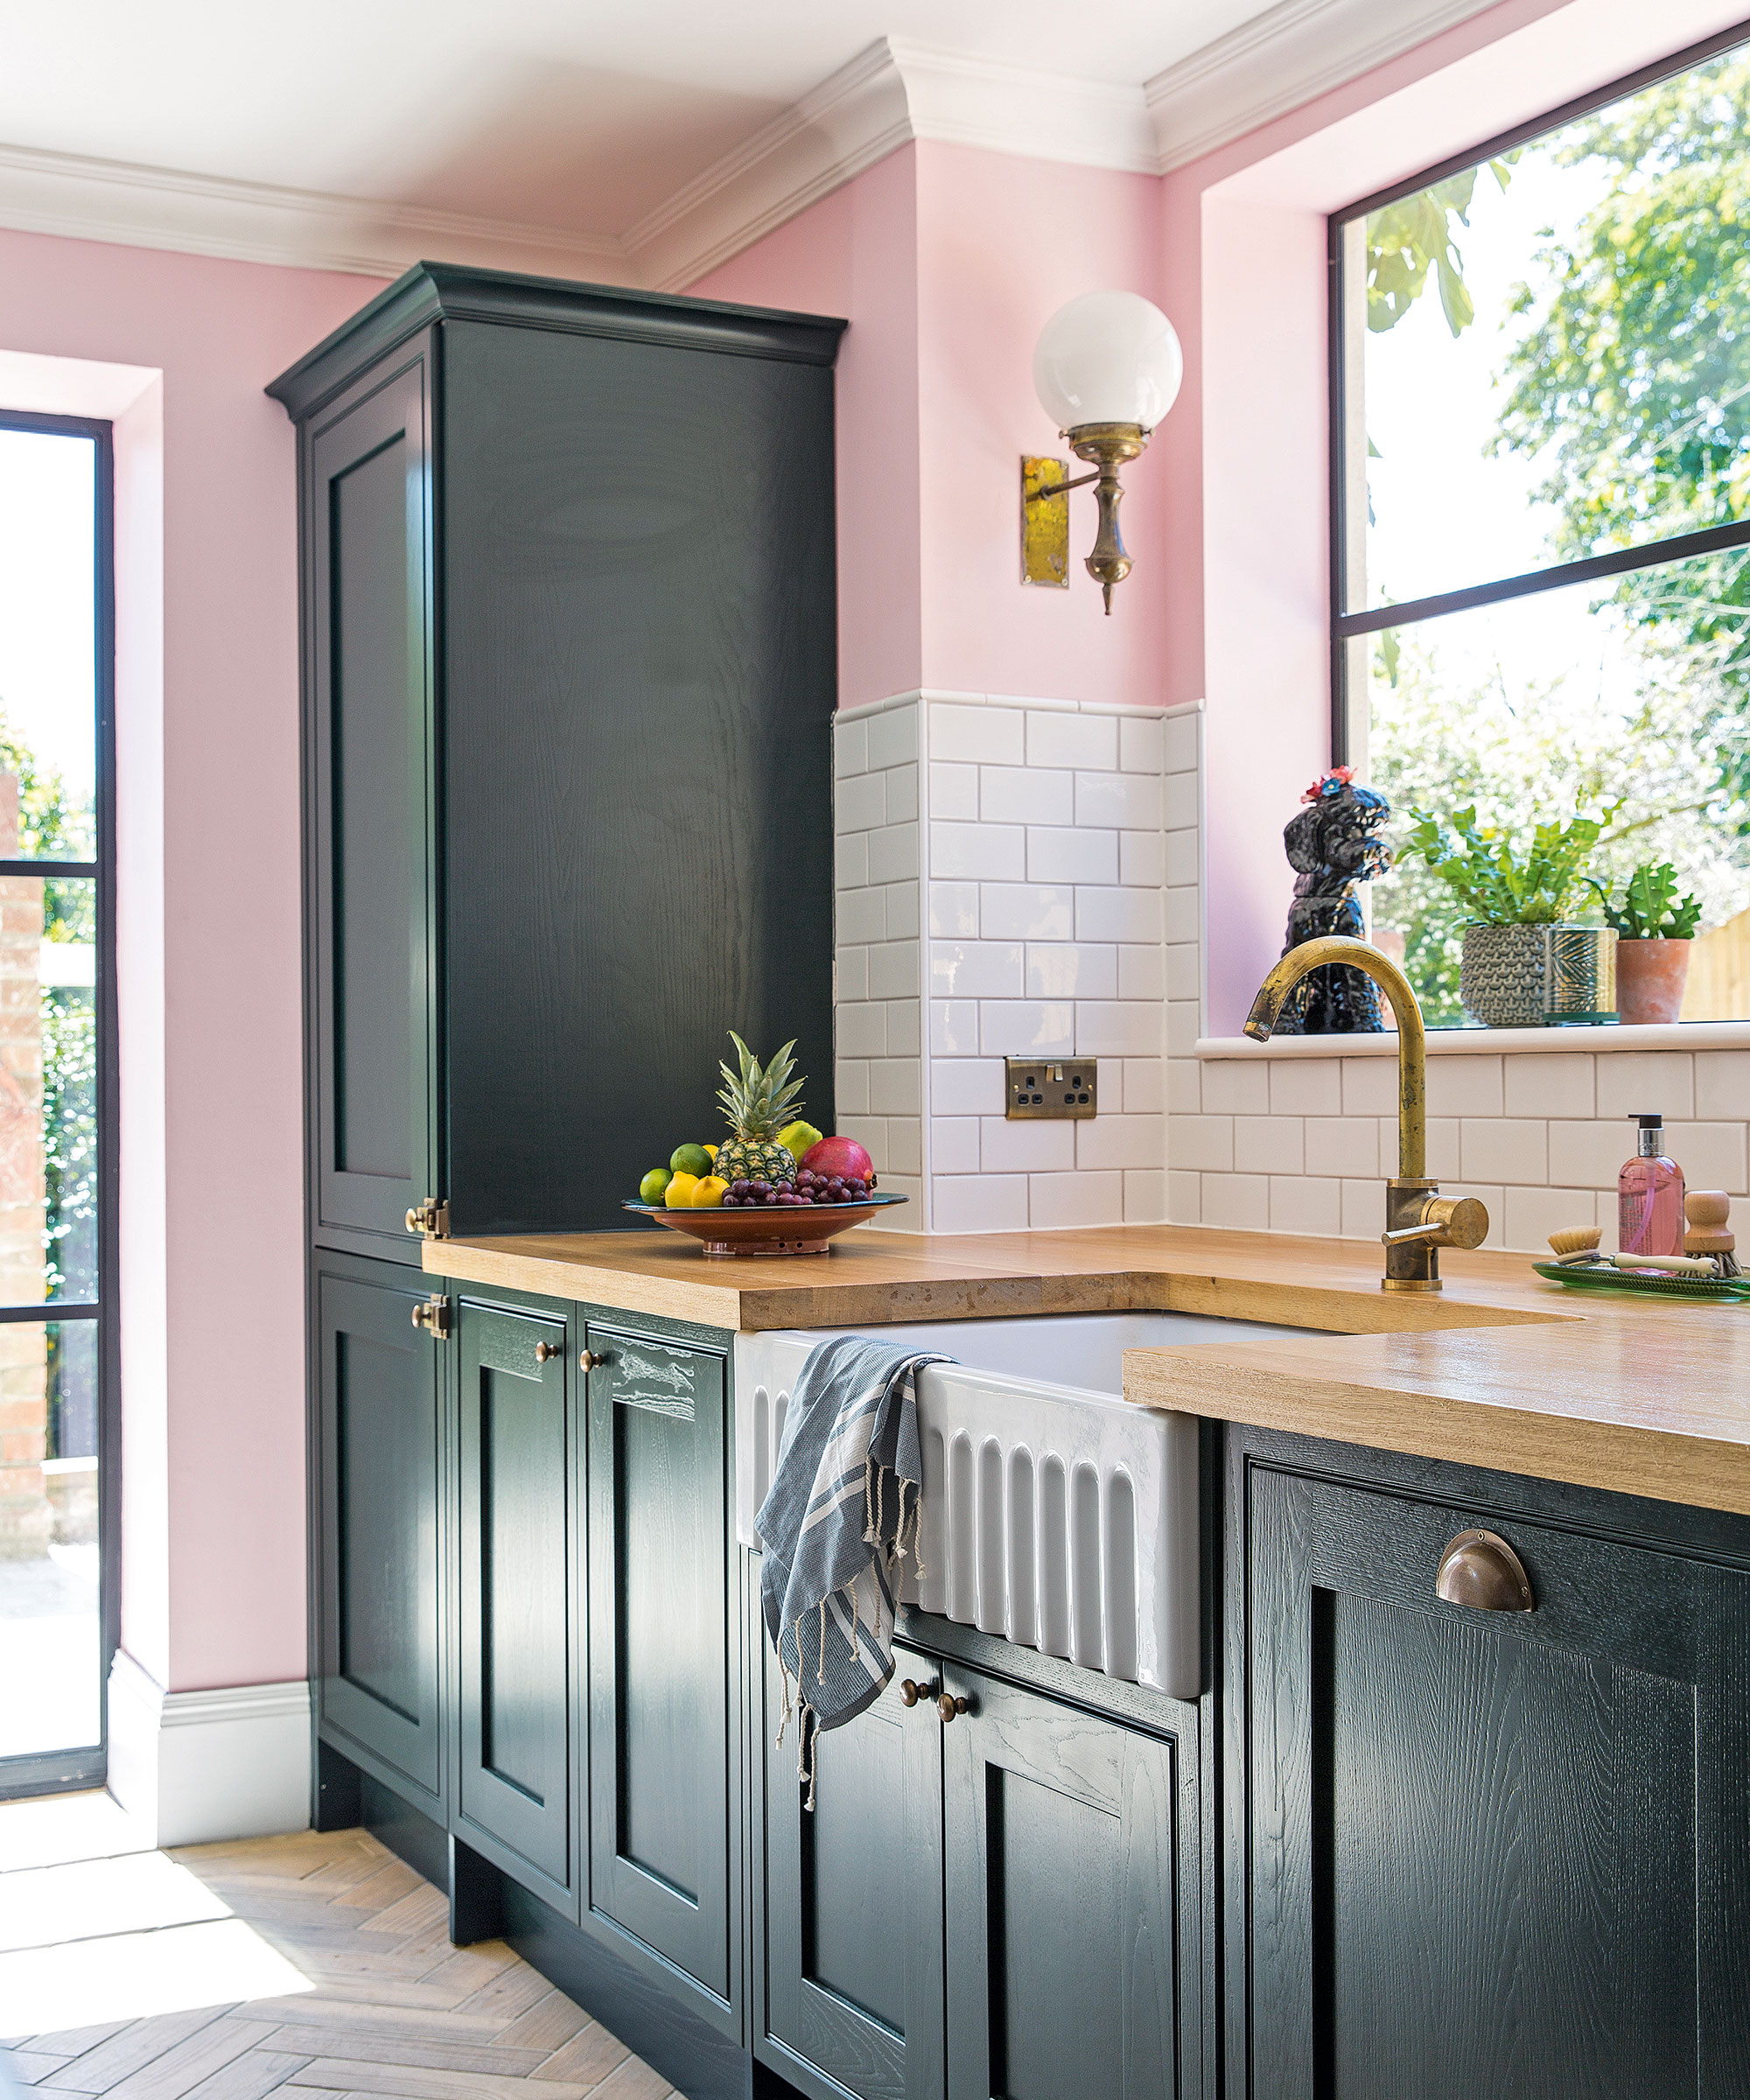 Kitchen sink ideas  18 ways to update your kitchen design   Ideal Home